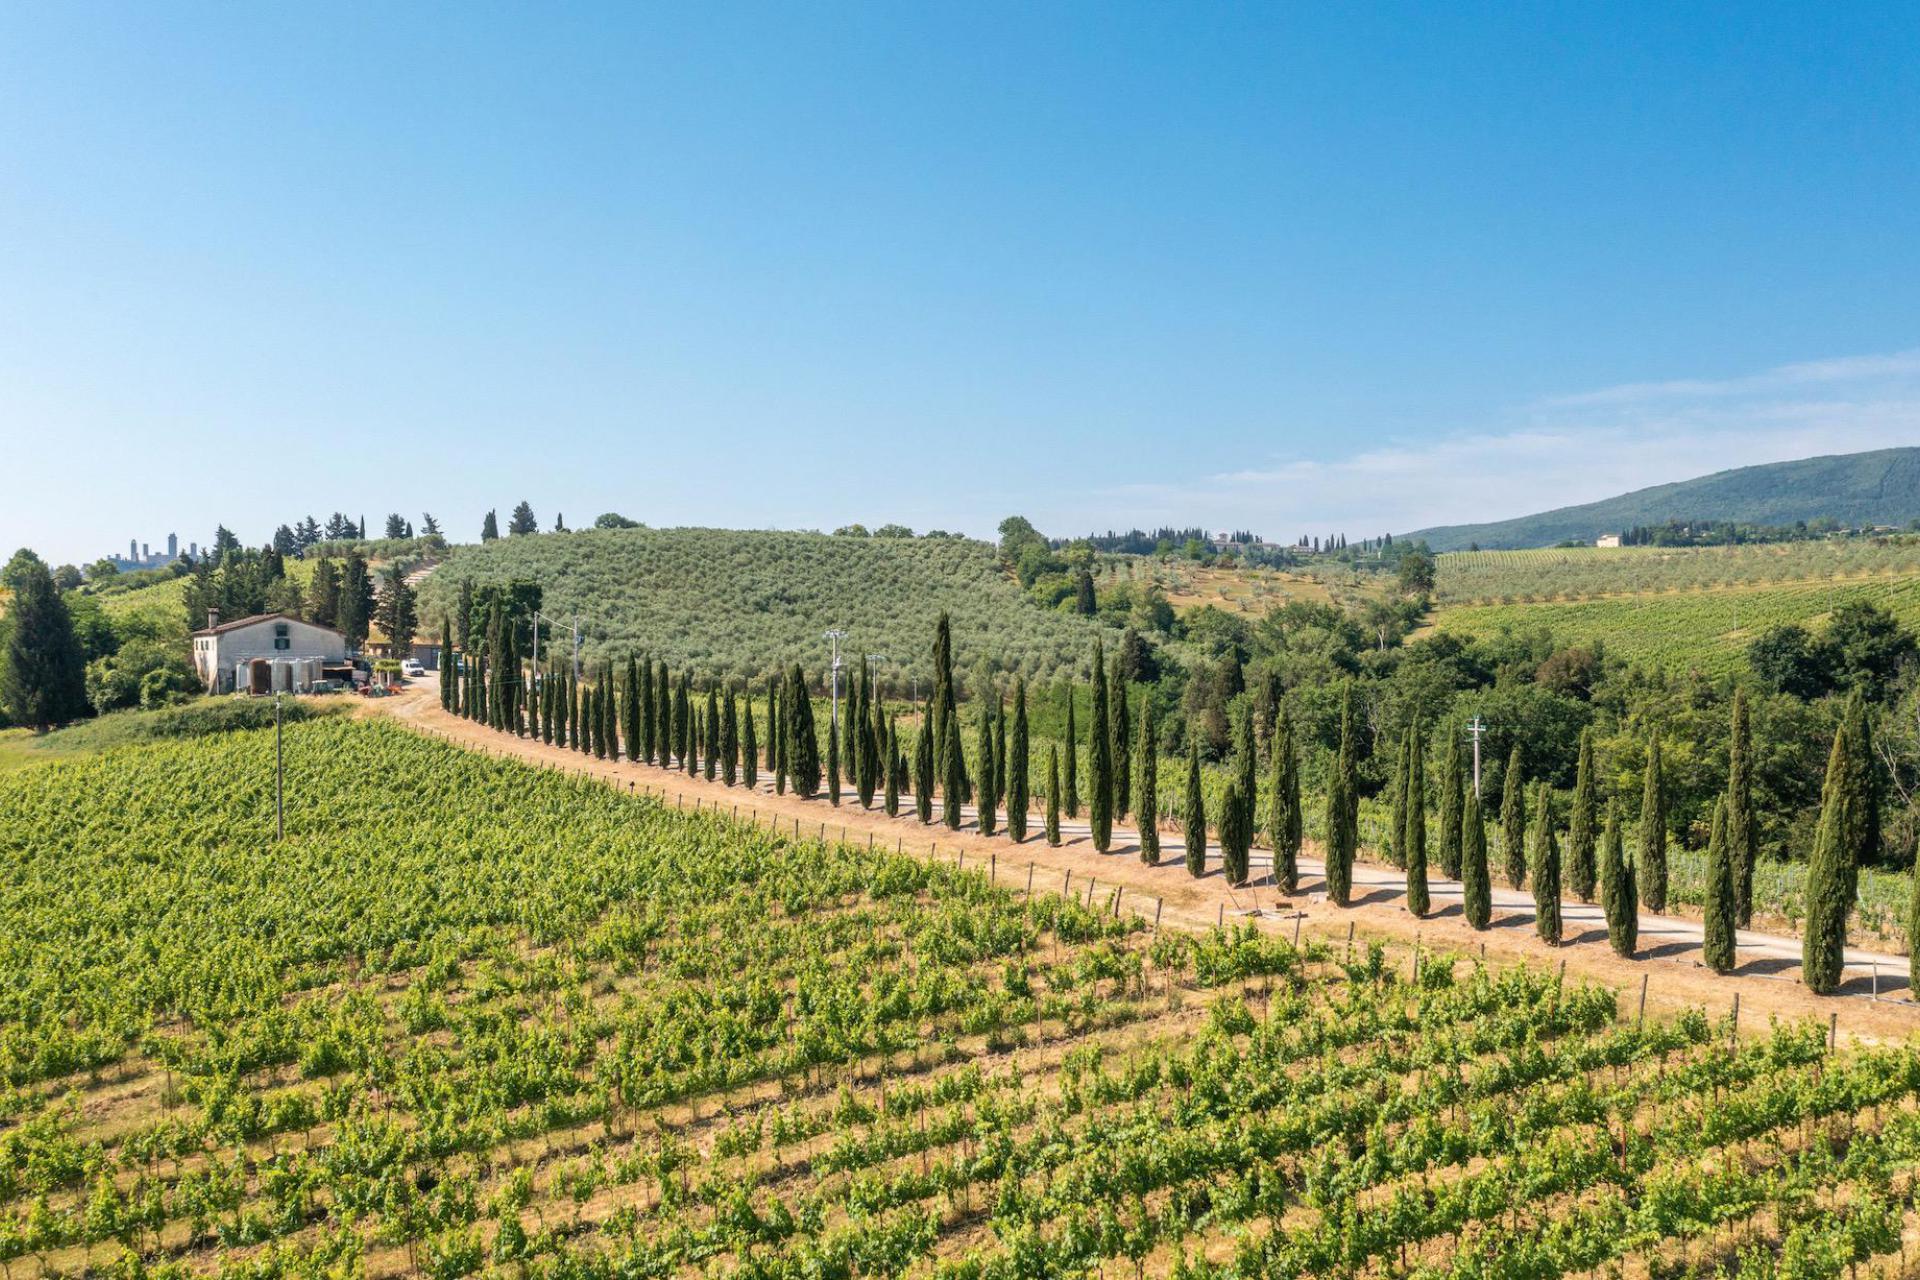 Agriturismo Tuscany Luxury agriturismo and winery near San Gimignano